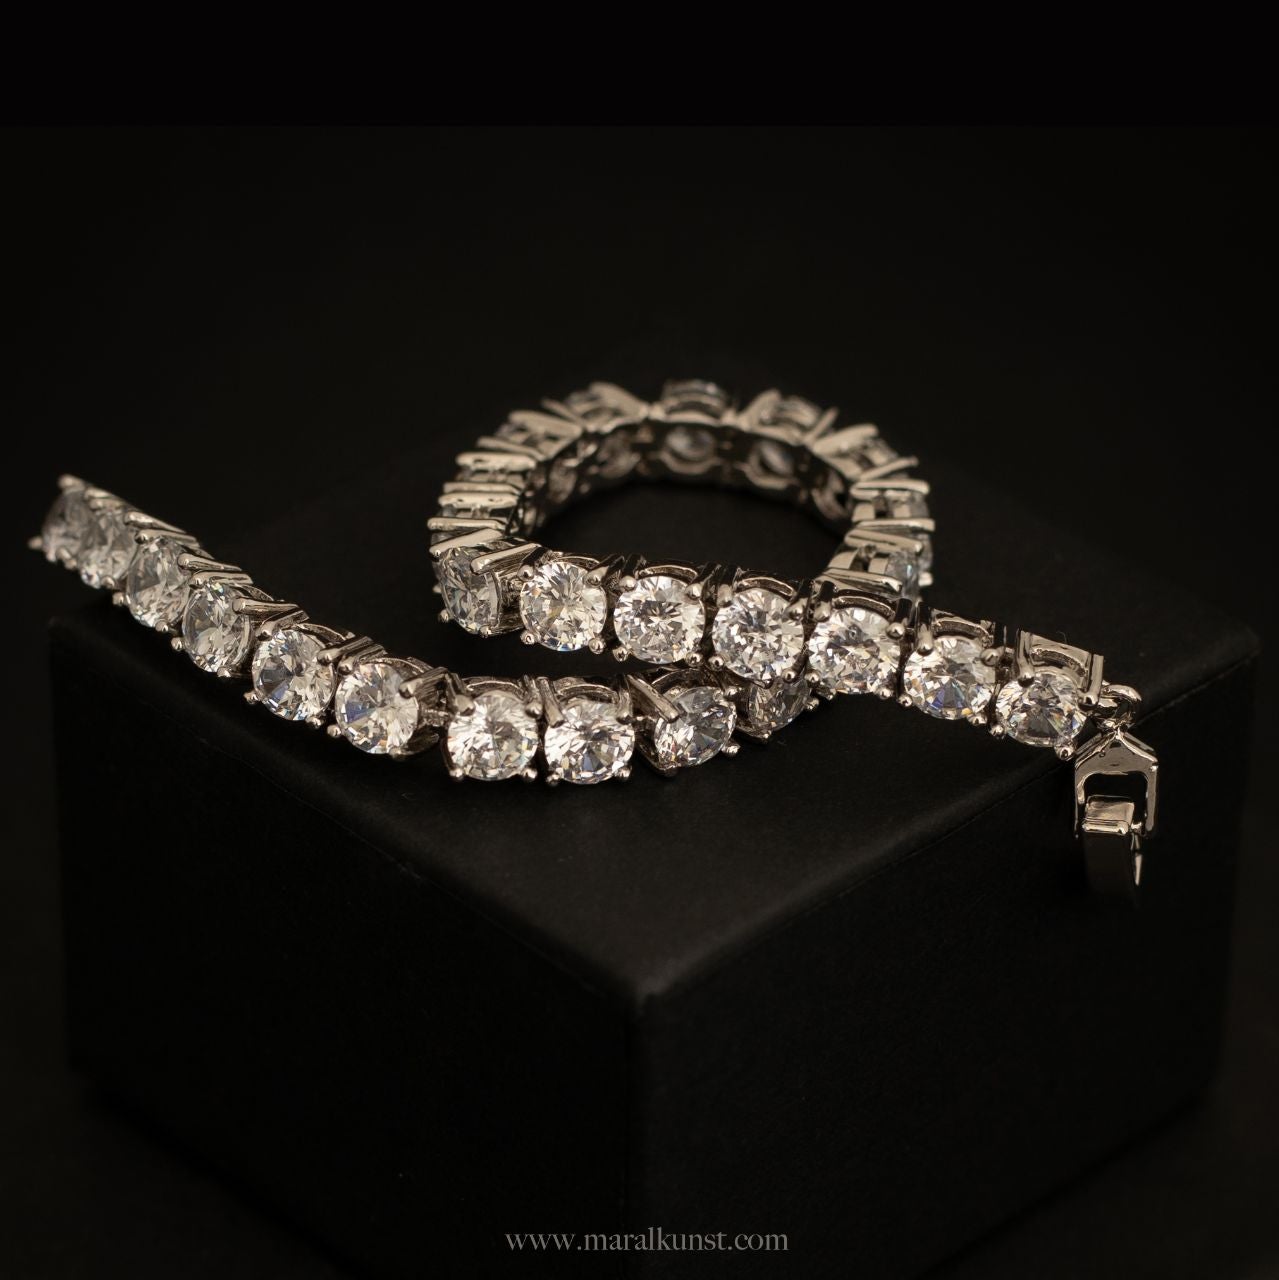 French CZ Tennis Bracelet - Maral Kunst Jewelry